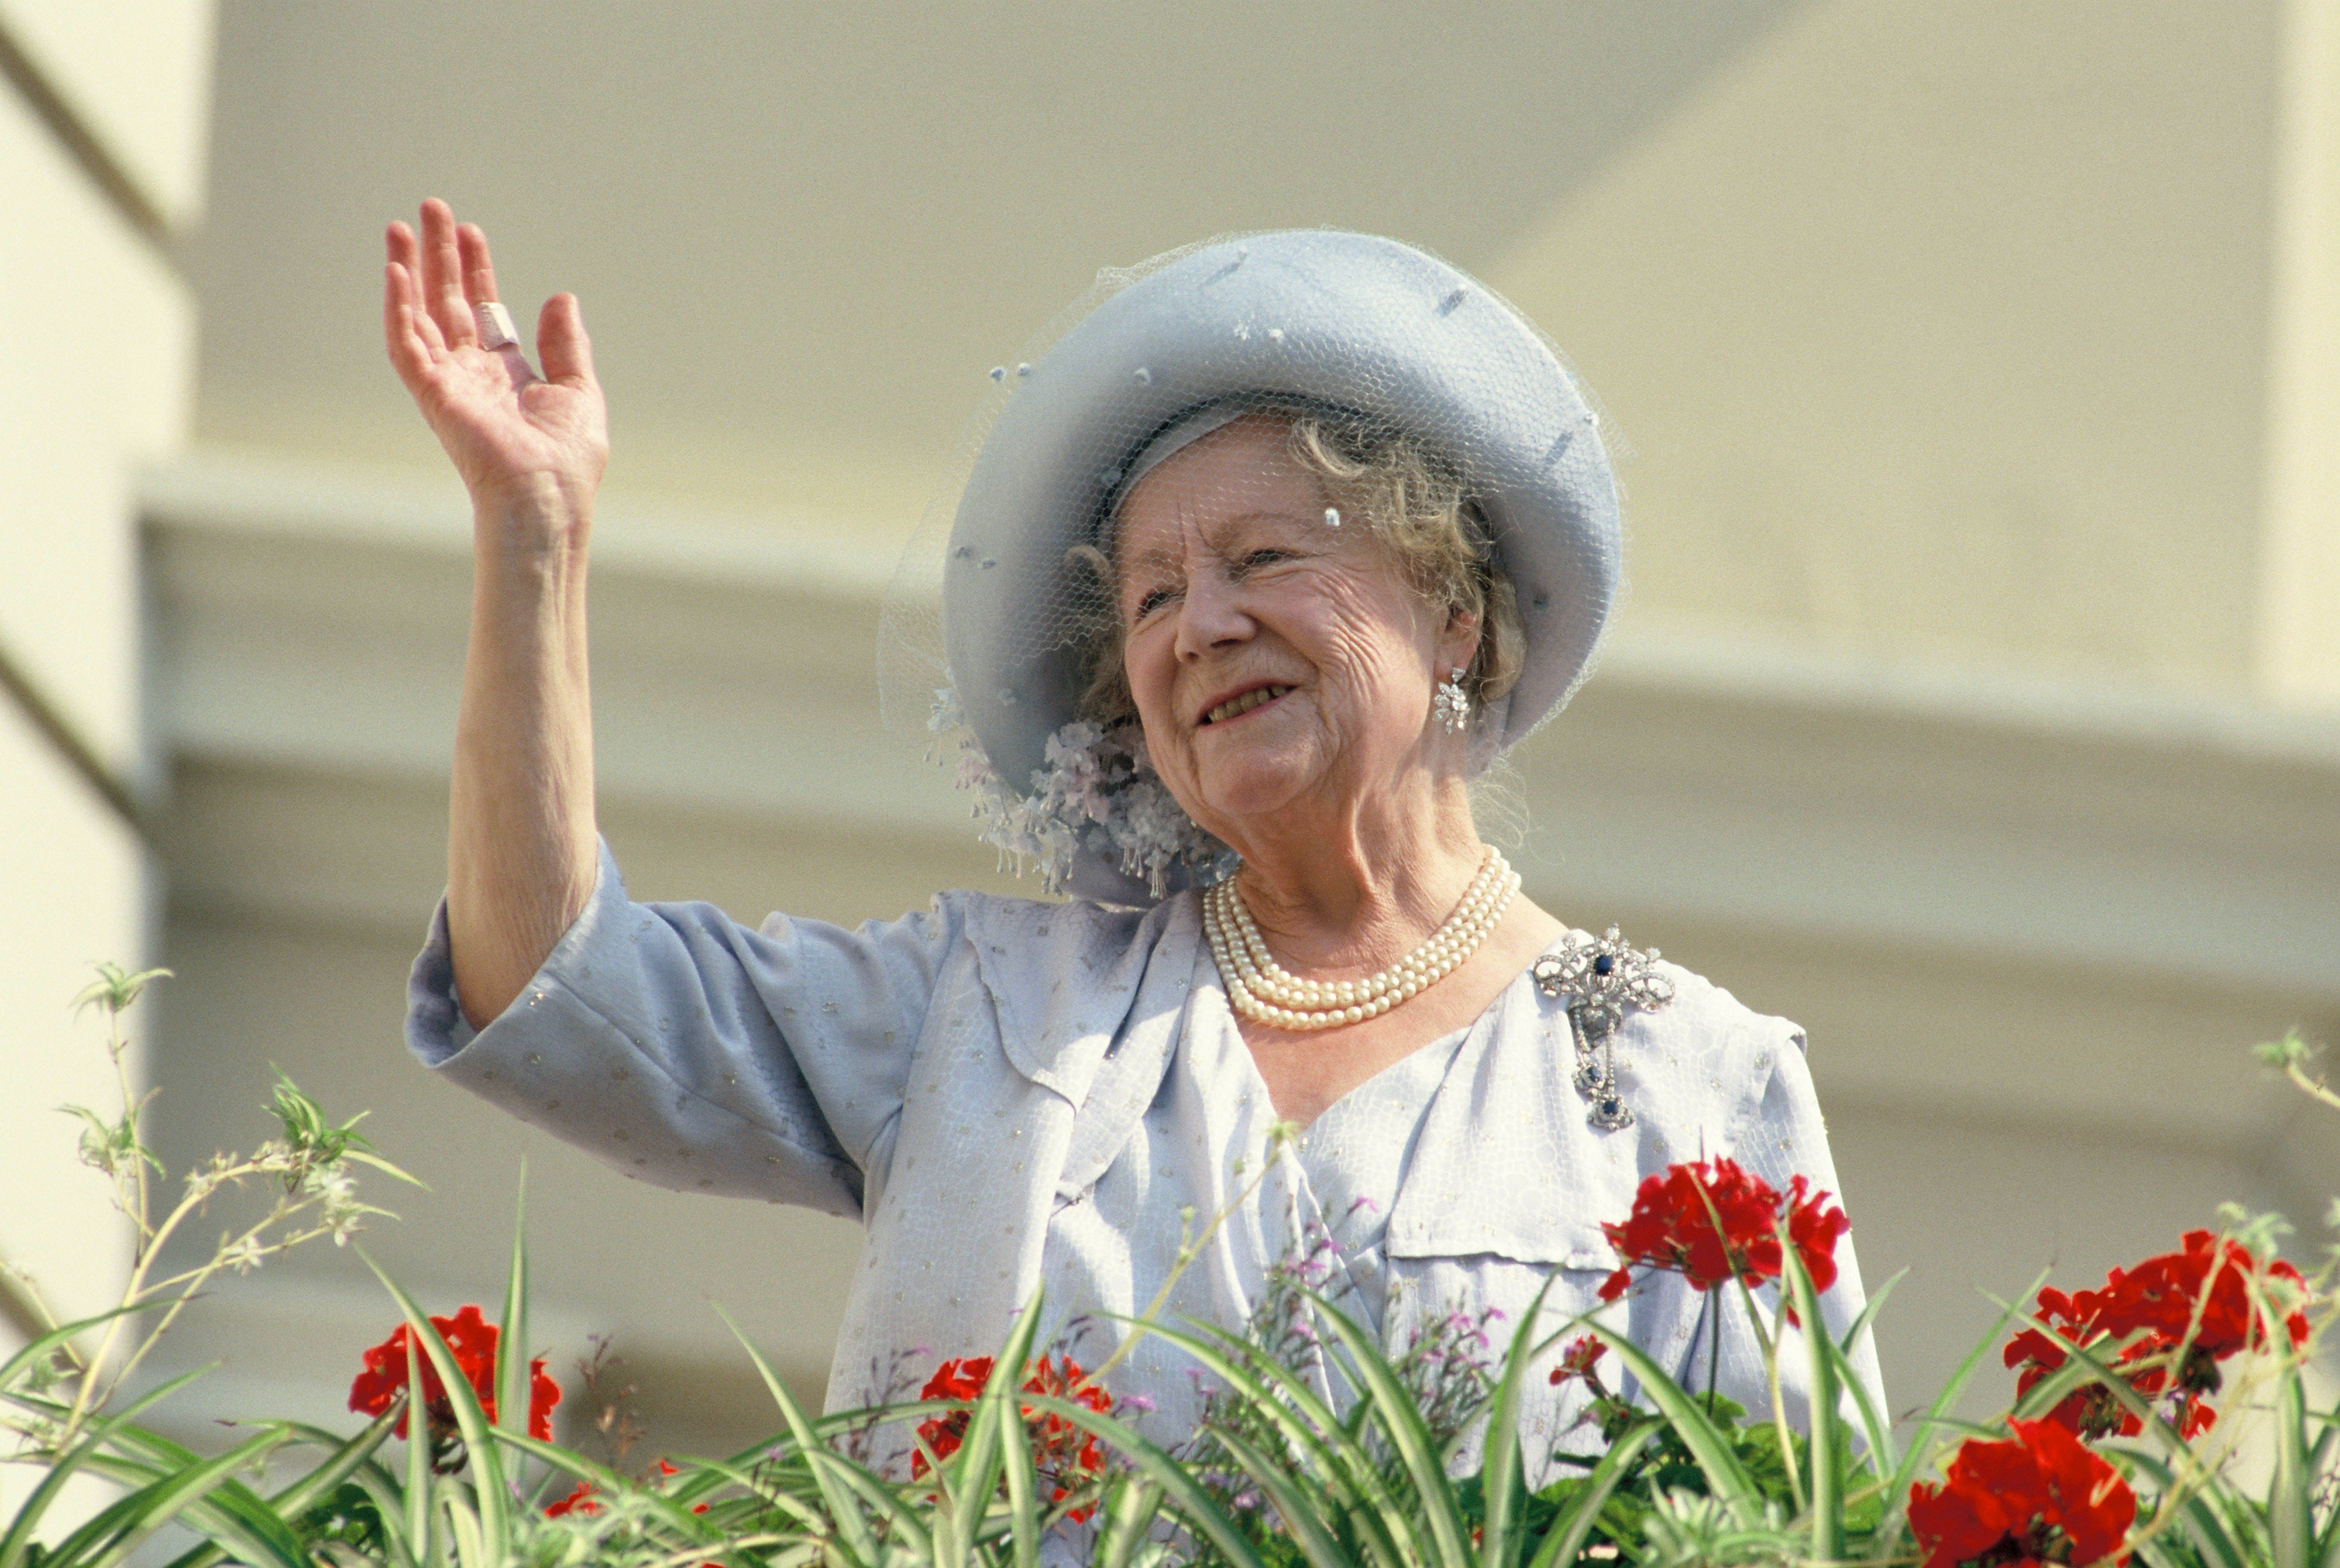 La Reina Madre saludando a los simpatizantes durante la celebración de su cumpleaños 90, el 4 de agosto de 1990 en Londres, Inglaterra. | Foto: Getty Images